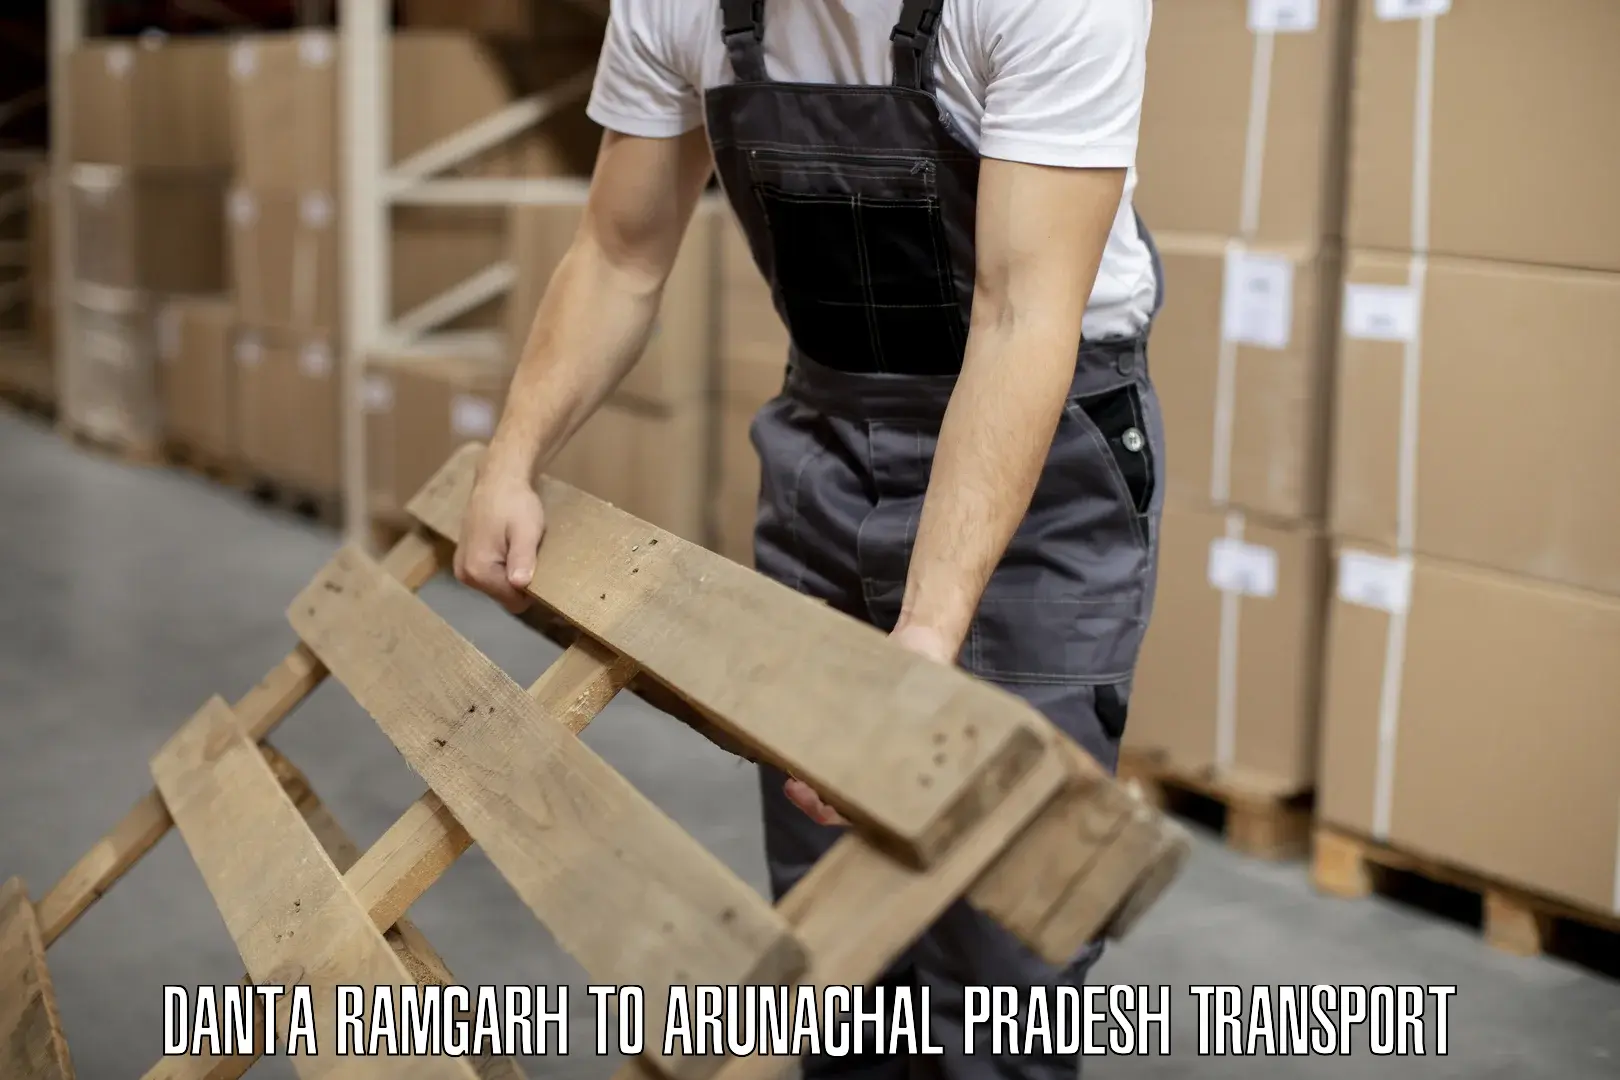 Shipping partner Danta Ramgarh to Dirang